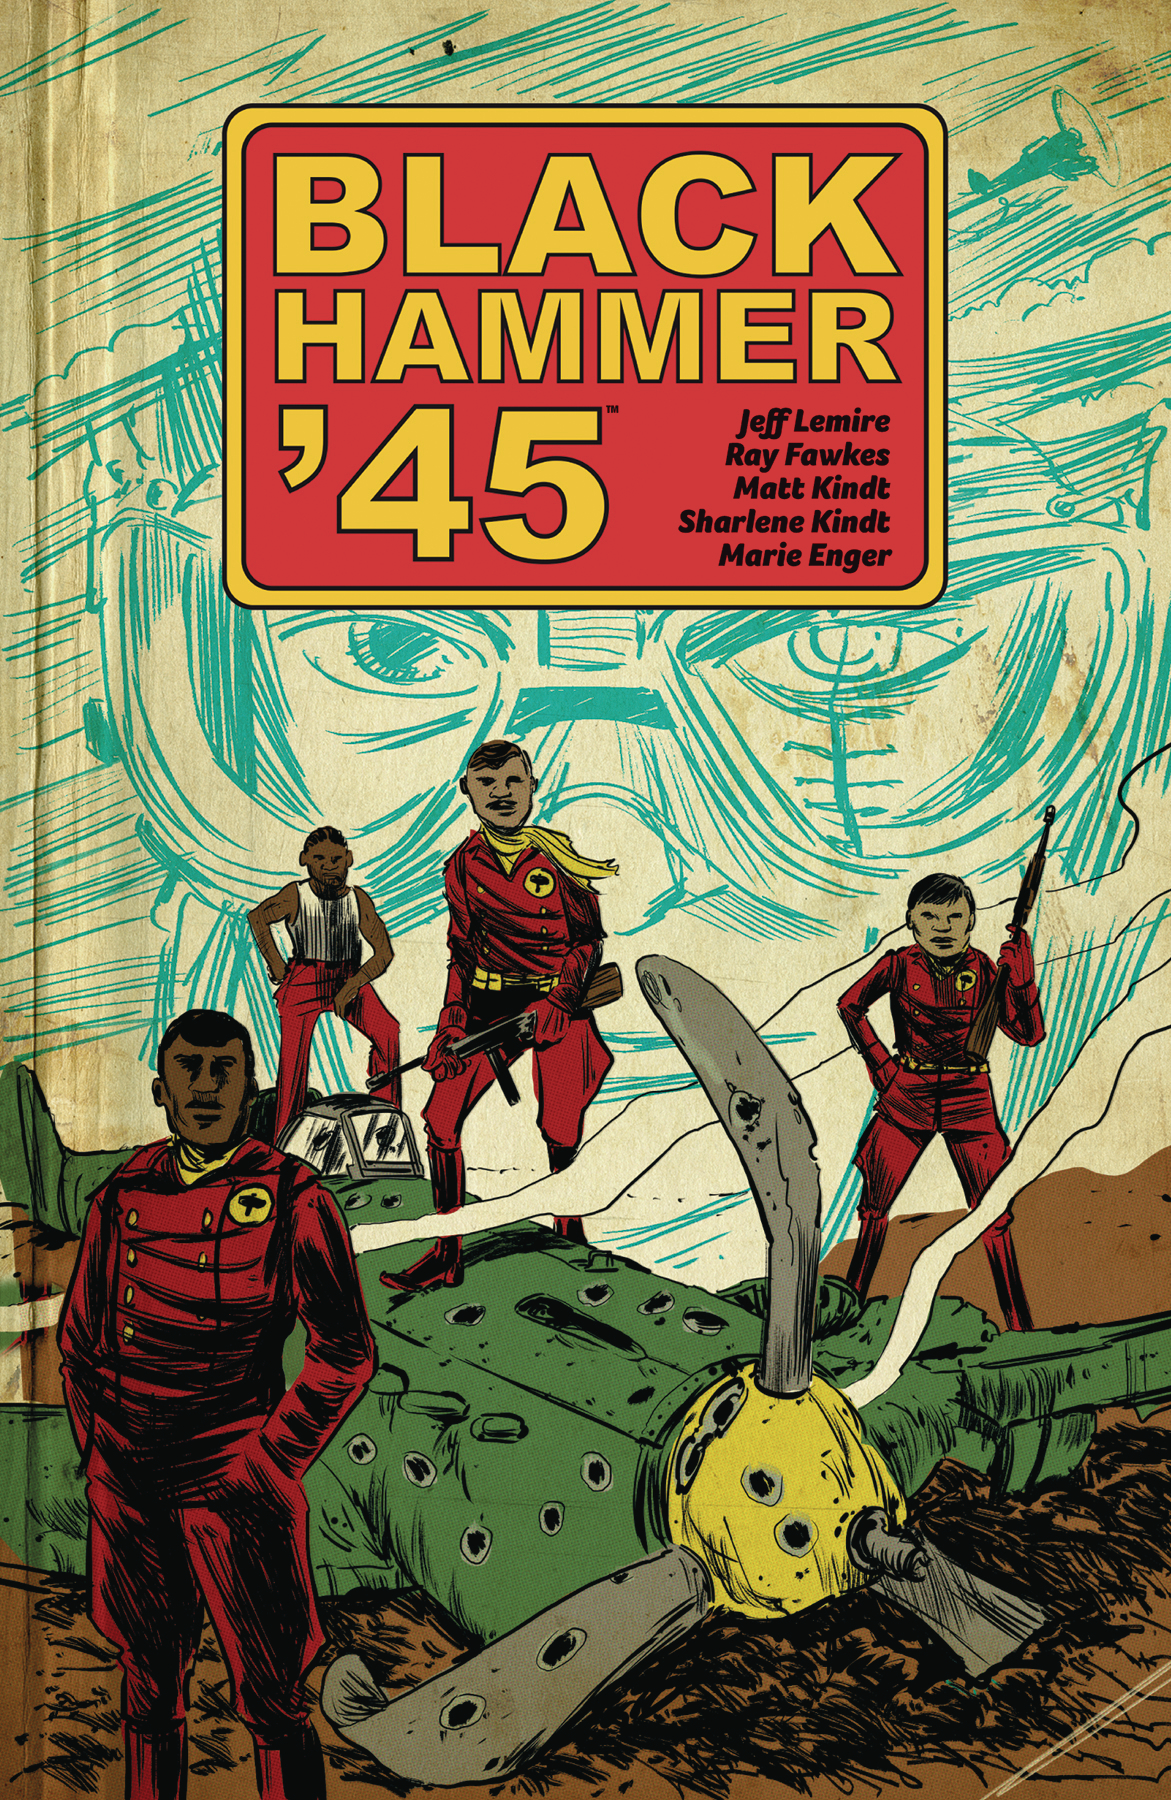 Black Hammer 45 World of Black Hammer Graphic Novel Volume 1